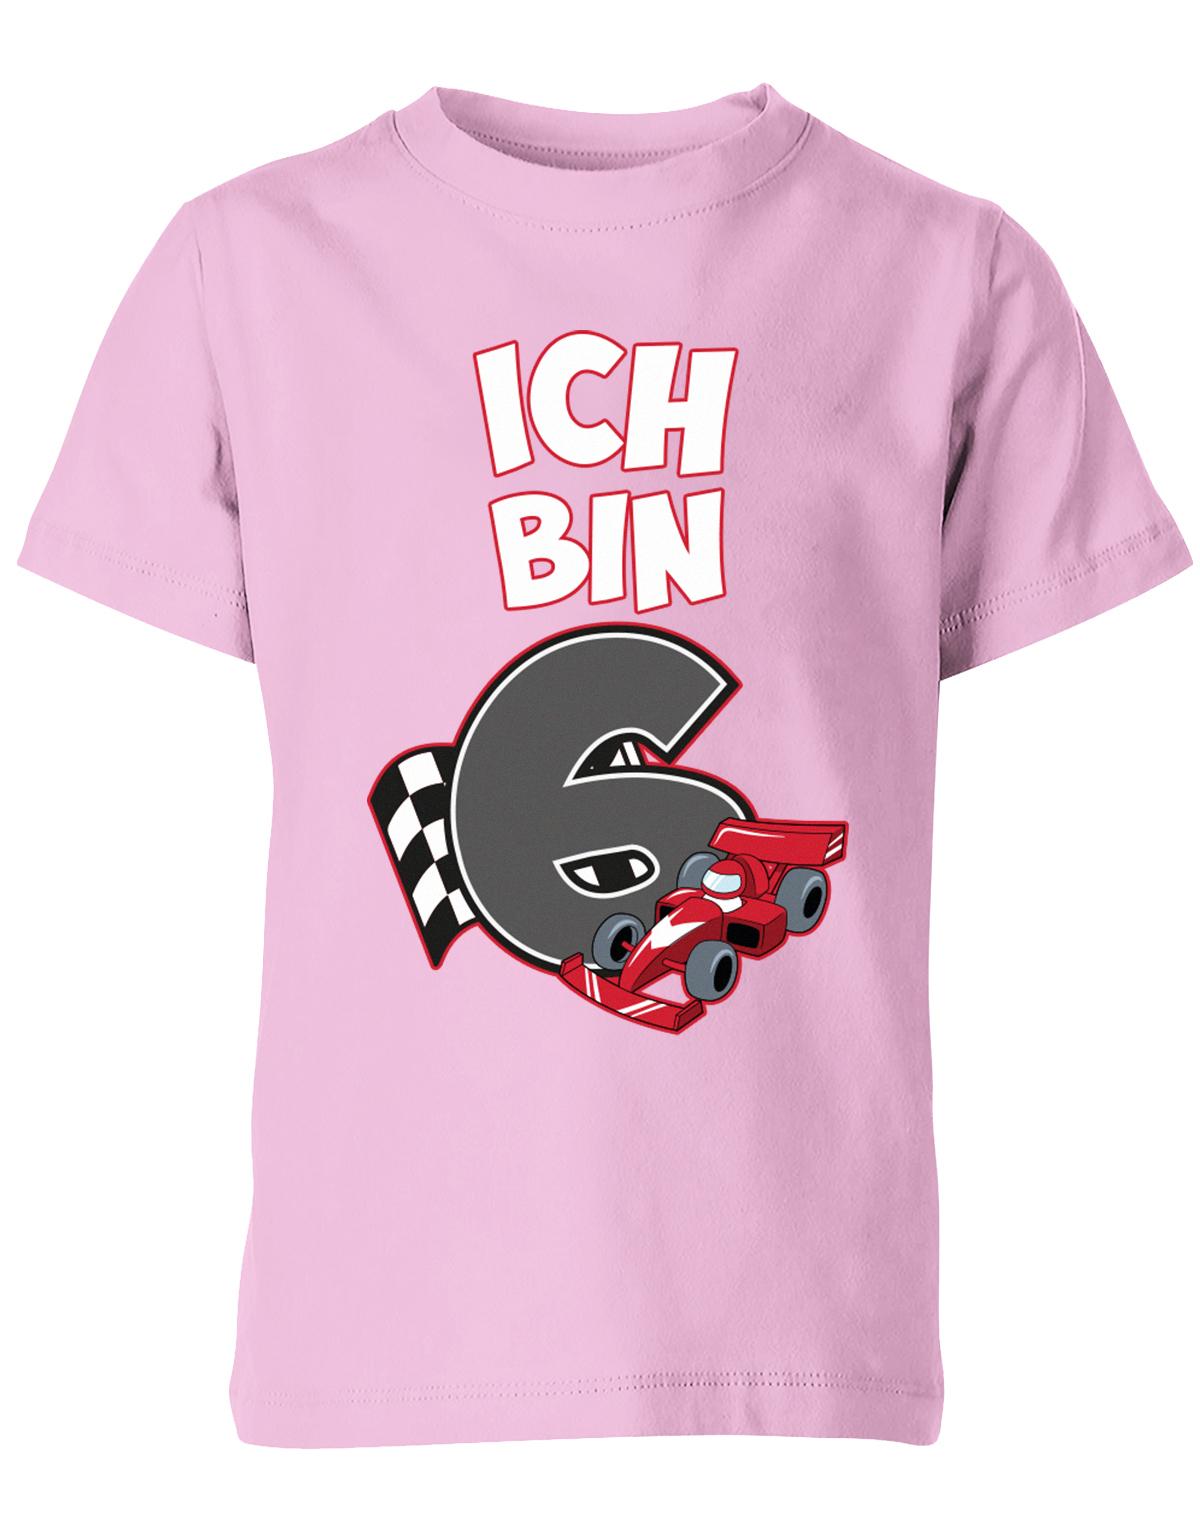 ich-bin-6-autorennen-rennwagen-geburtstag-rennfahrer-kinder-shirt-rosa